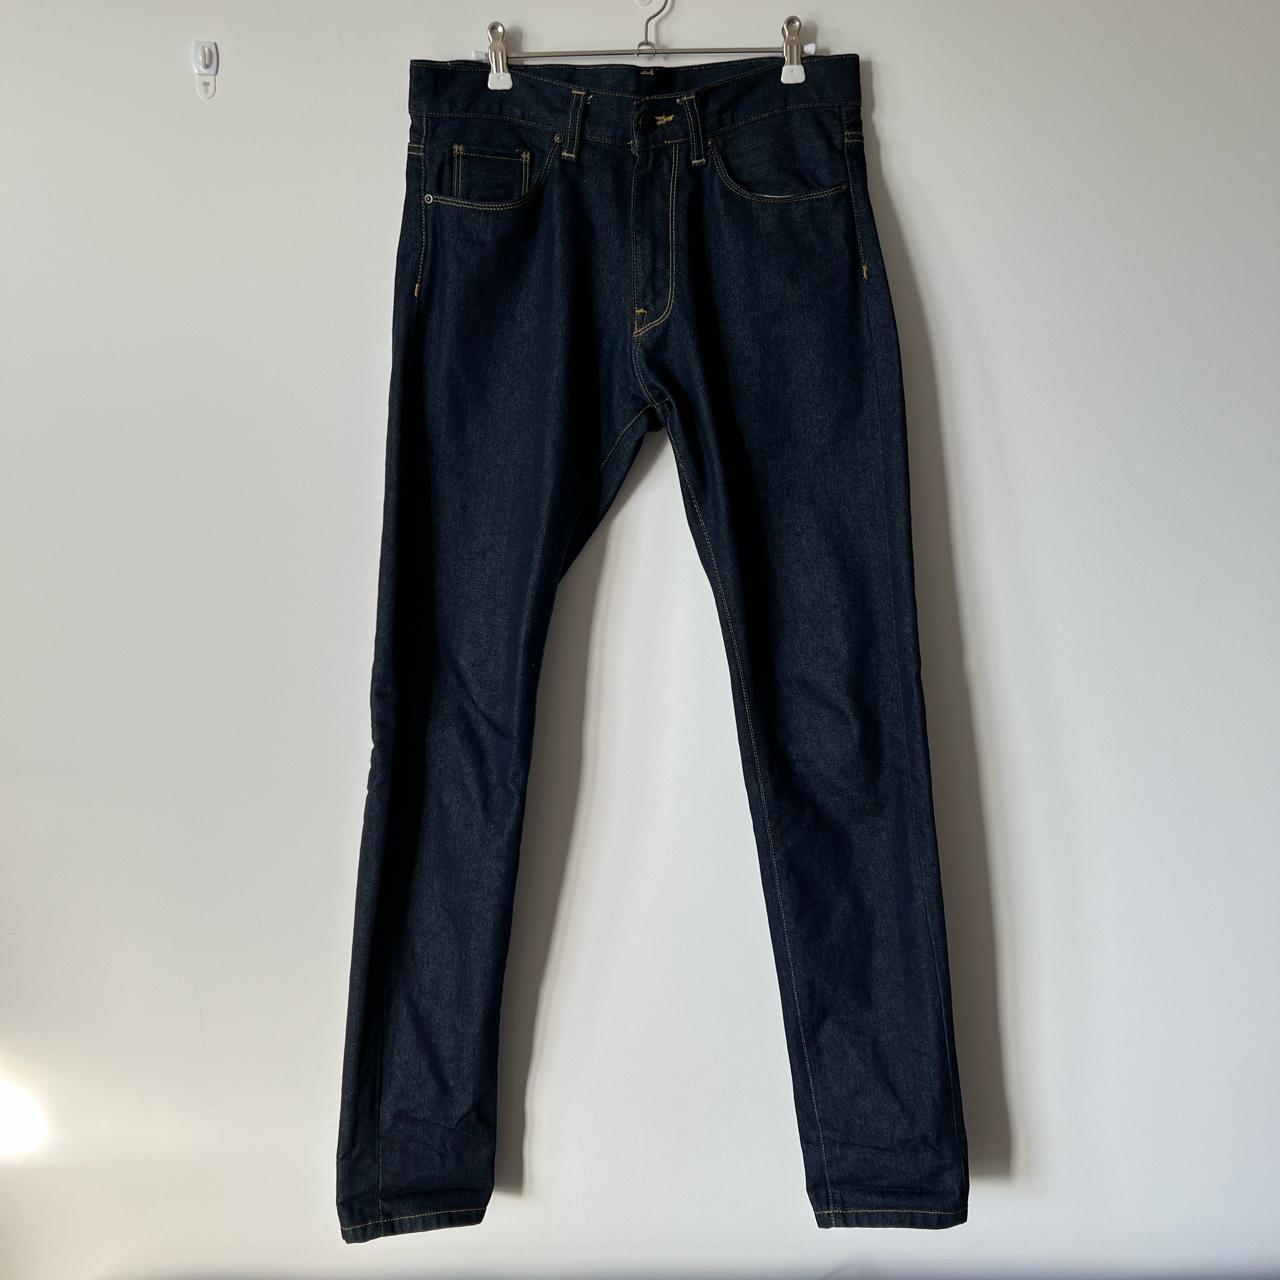 Carhartt dark blue jeans W29L34 #carhartt #jeans... - Depop